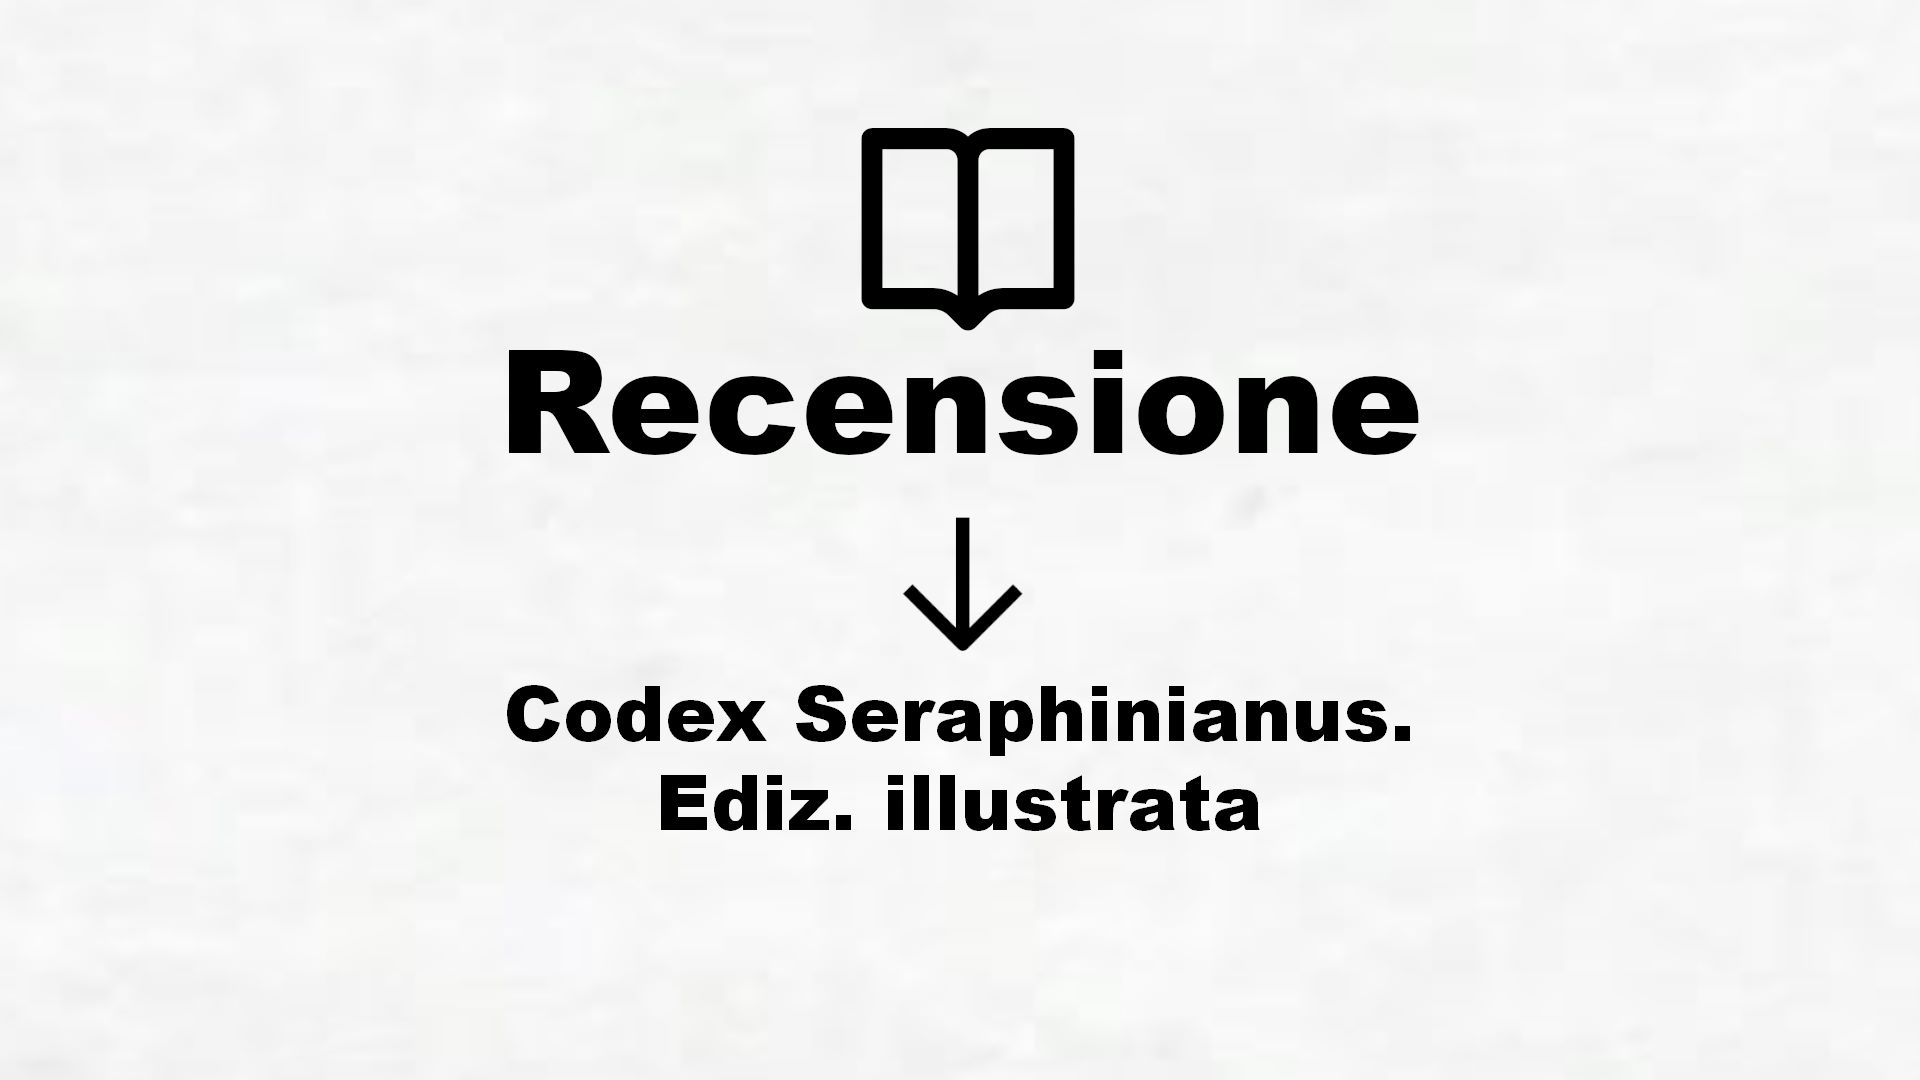 Codex Seraphinianus. Ediz. illustrata – Recensione Libro